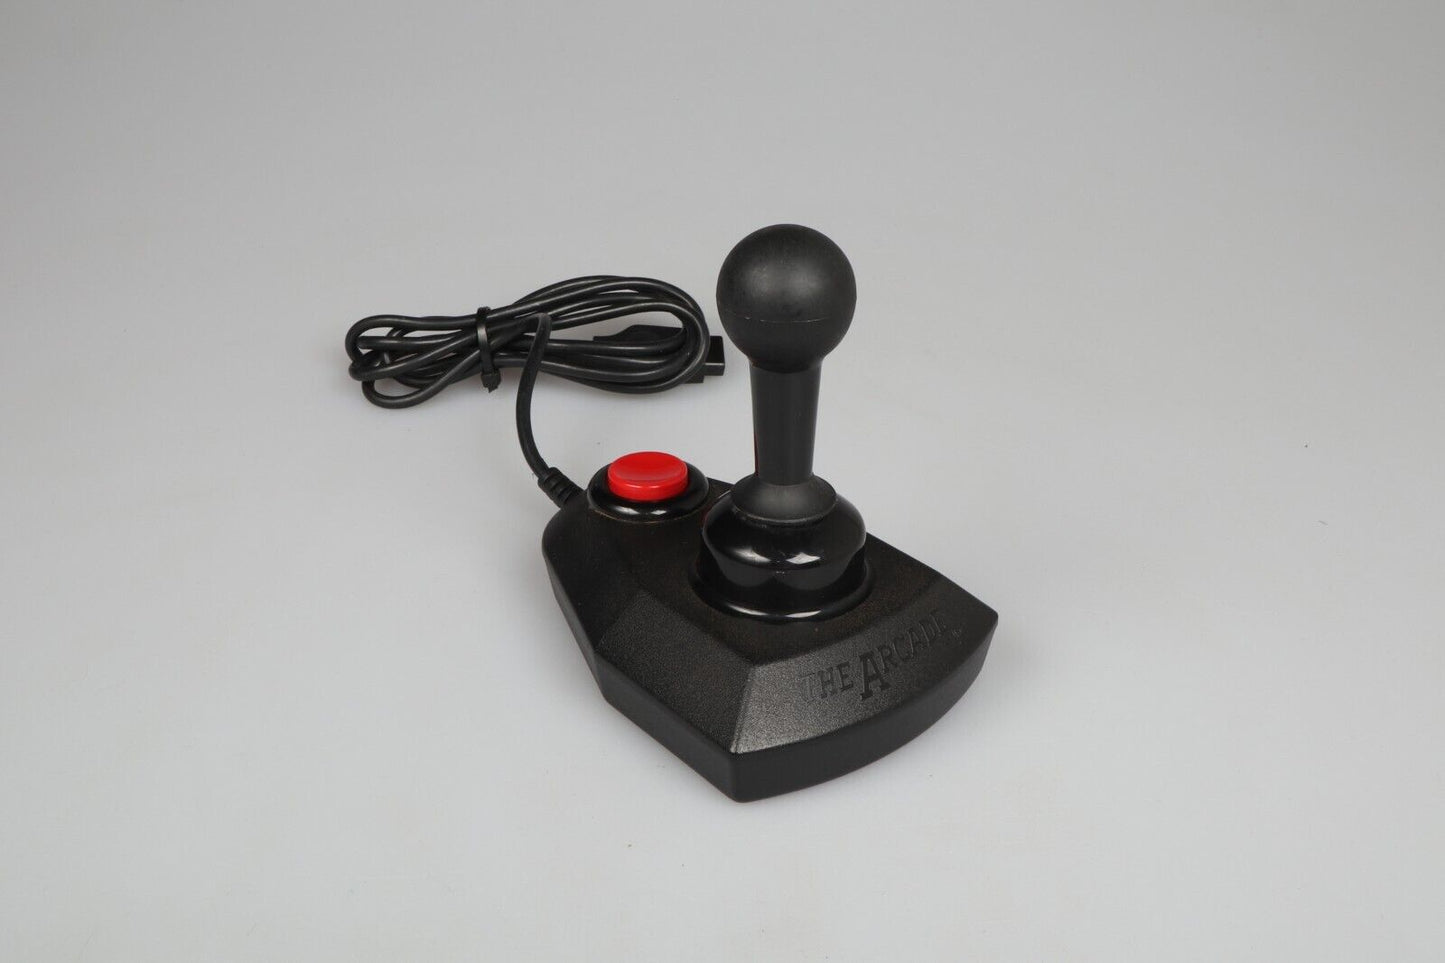 Atari 2600 | The Arcade Controller